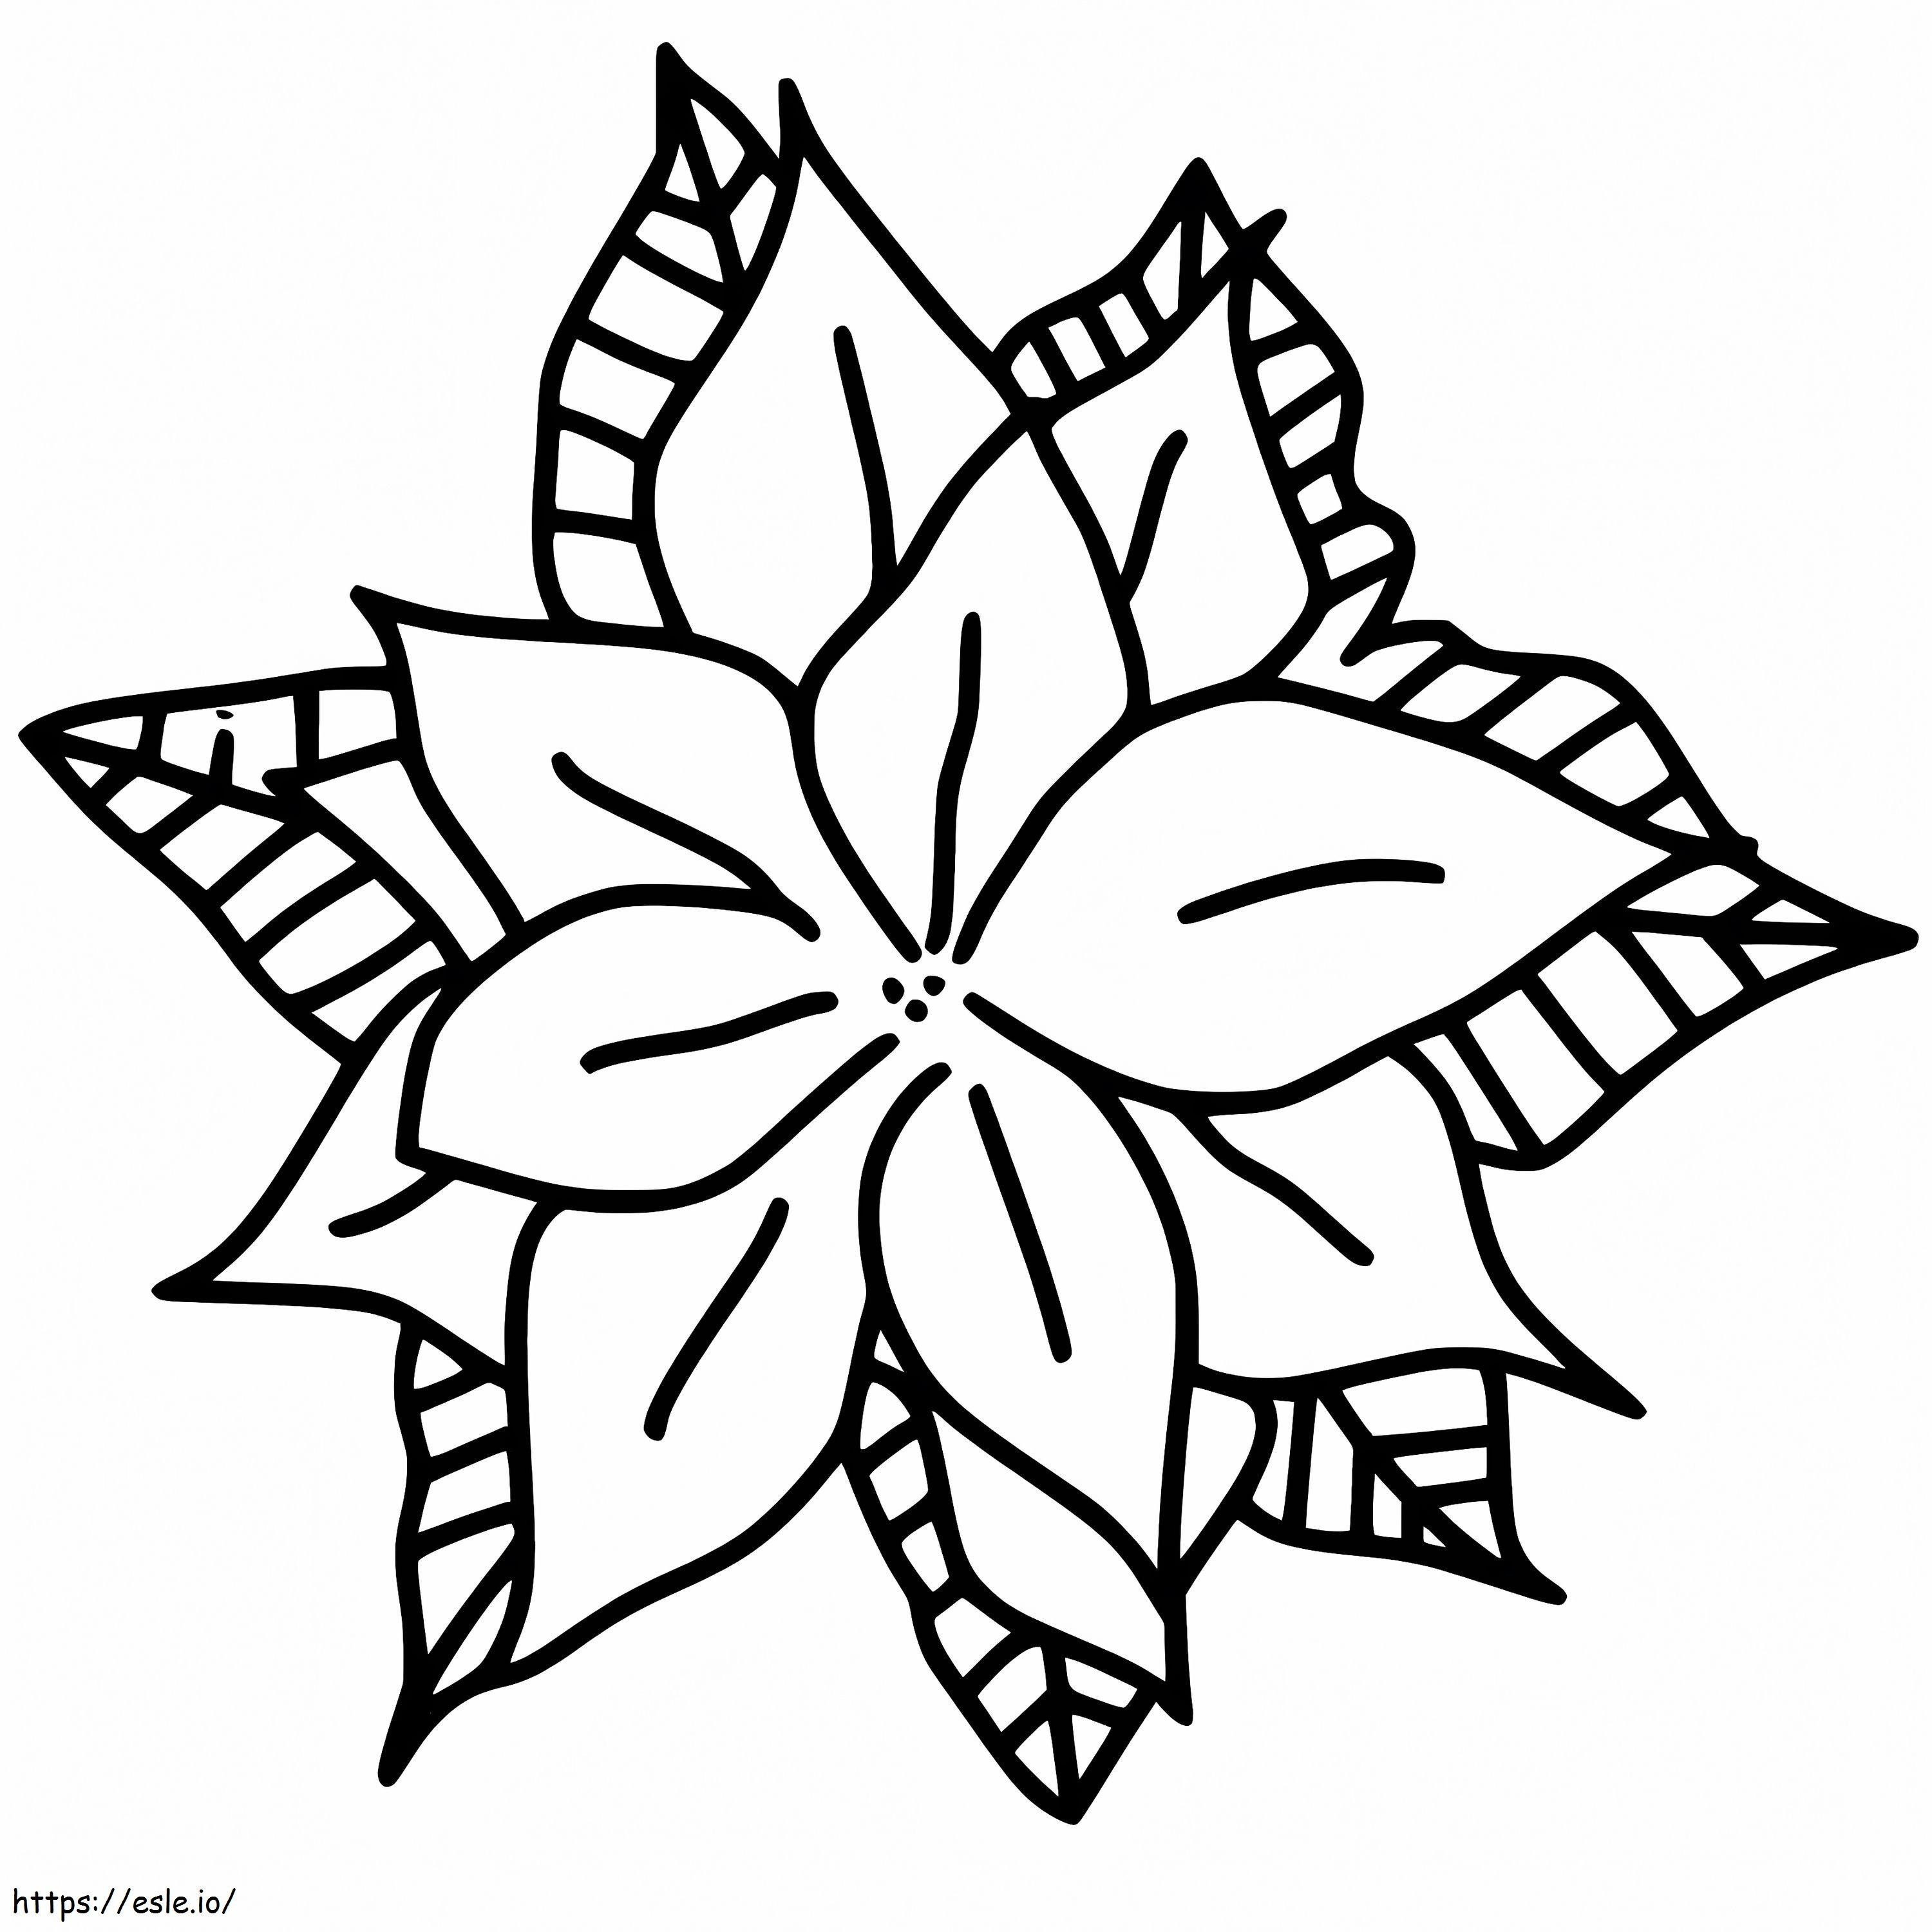 Coloriage Poinsettia de Noël gratuit à imprimer dessin